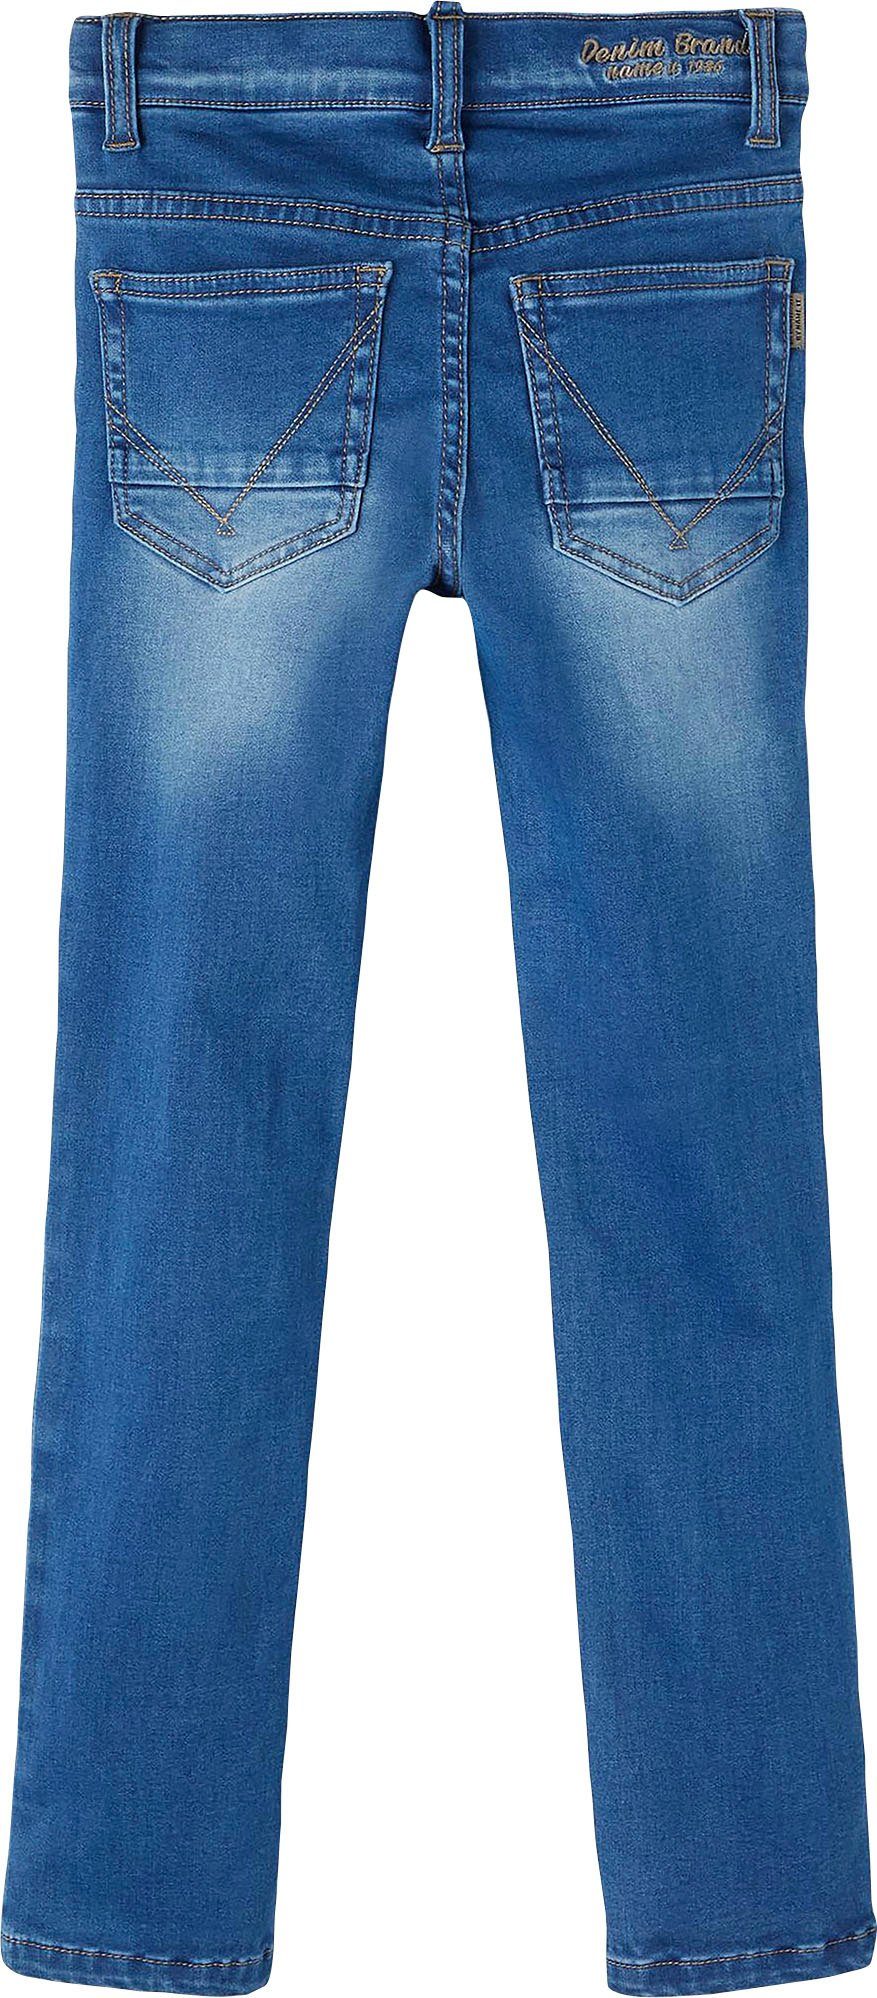 Stretch-Jeans denim blue Name It medium